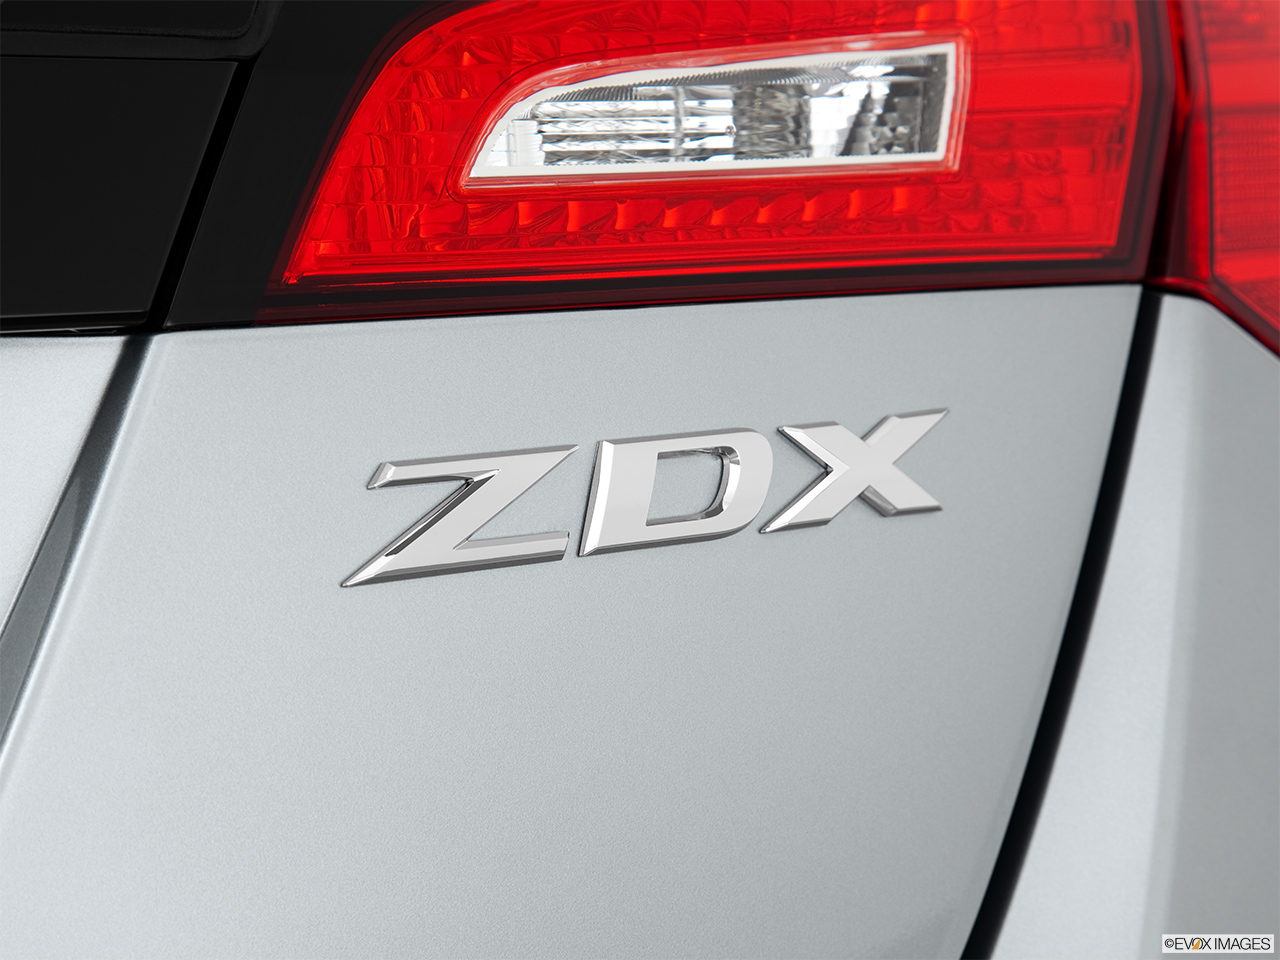 2011 Acura ZDX ZDX Advance Rear model badge/emblem 